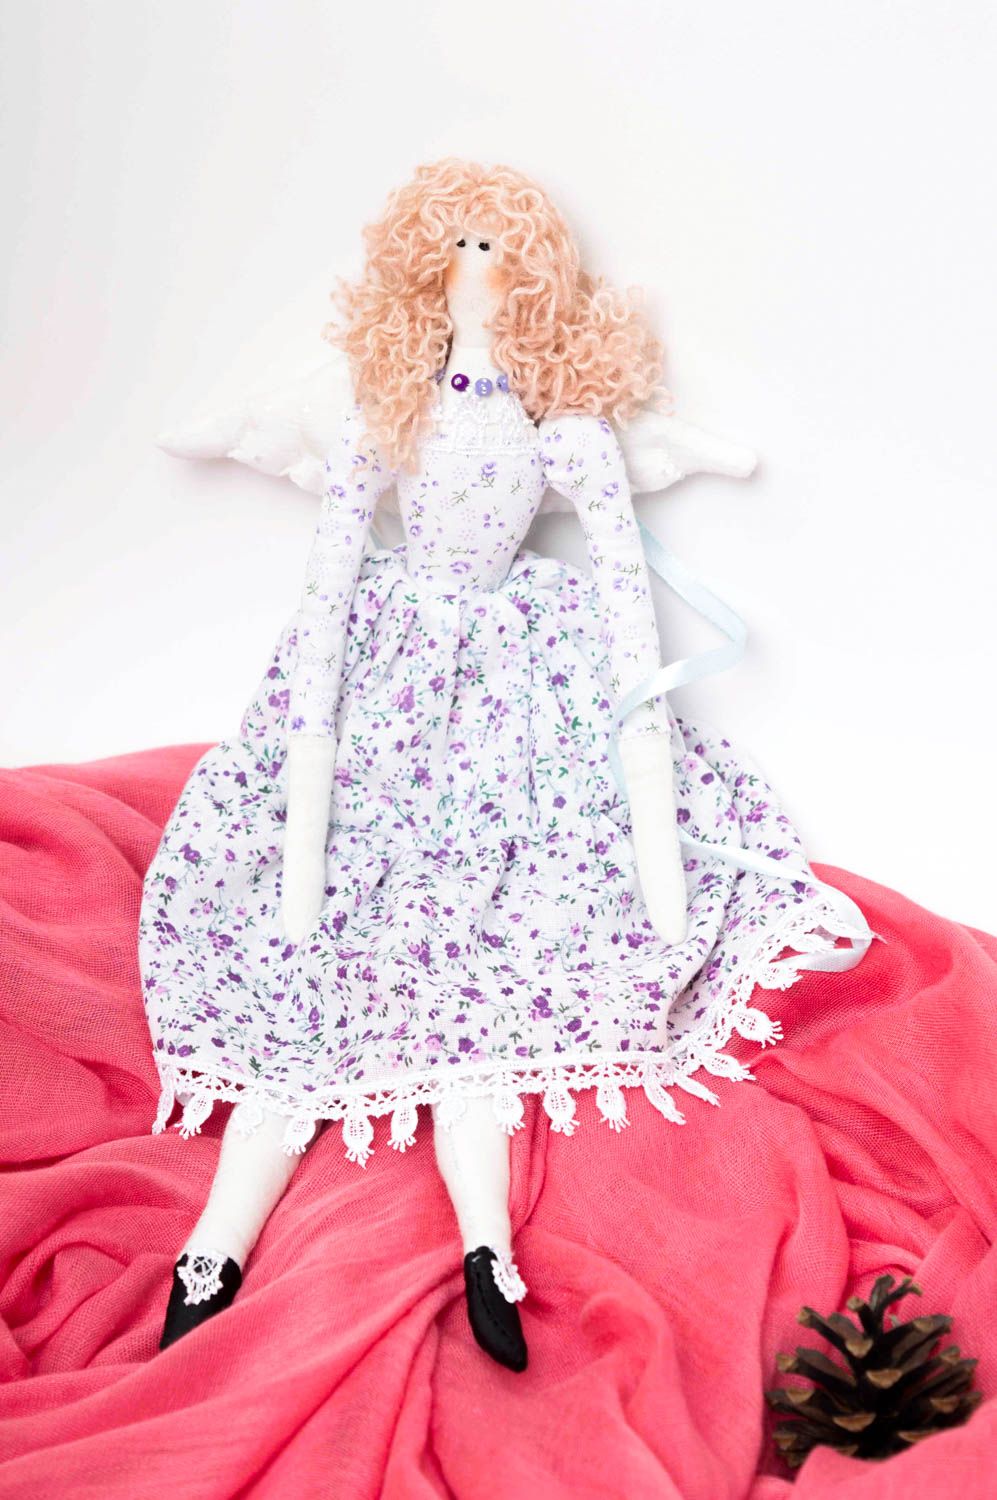 Bambola bella in stoffa fatta a mano pupazzo tessile originale idee regalo foto 1